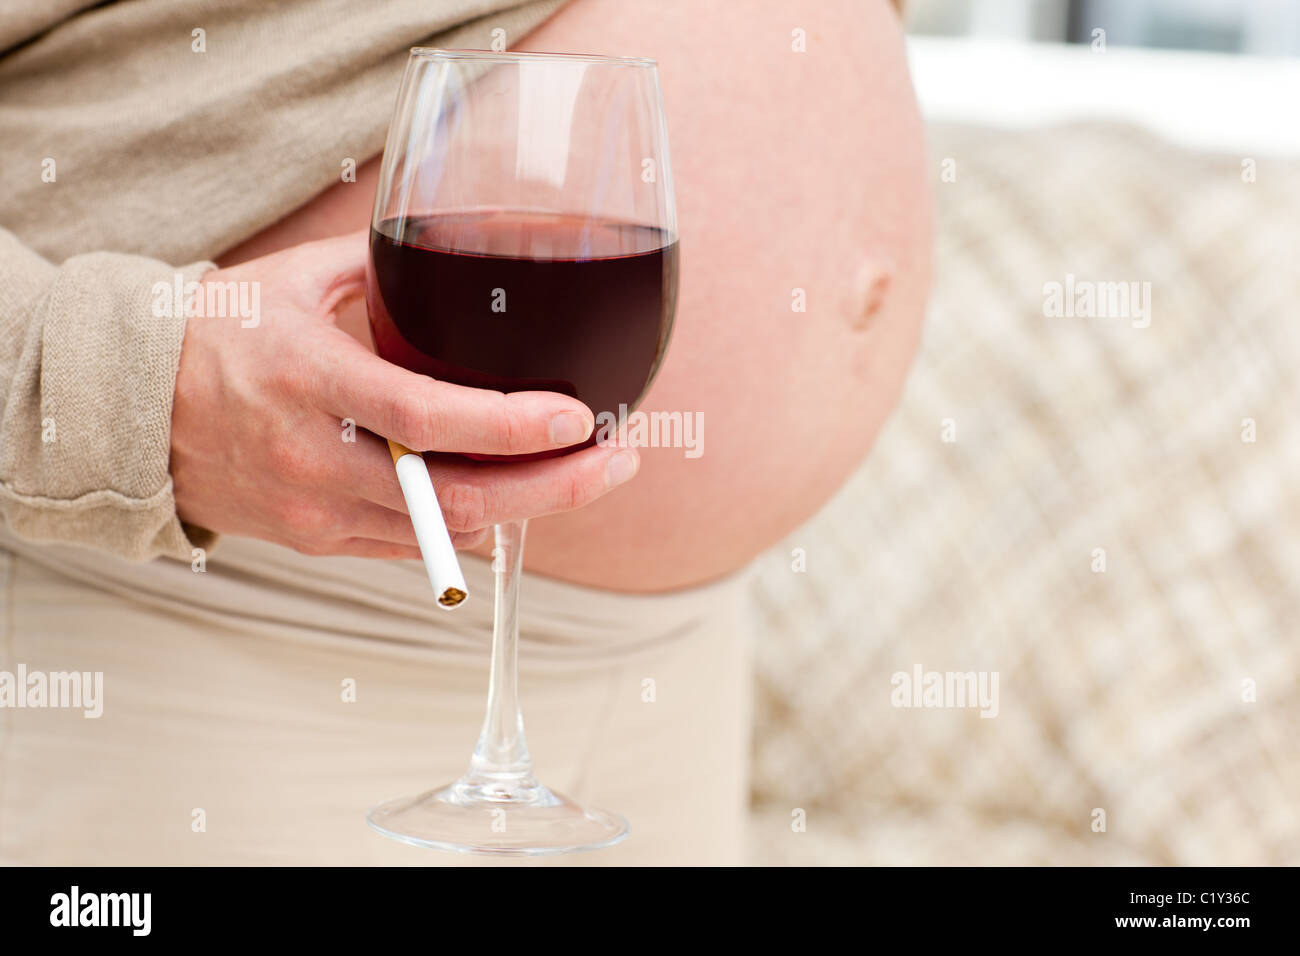 Что пьют беременные на ранних сроках. Алкоголь и беременность.